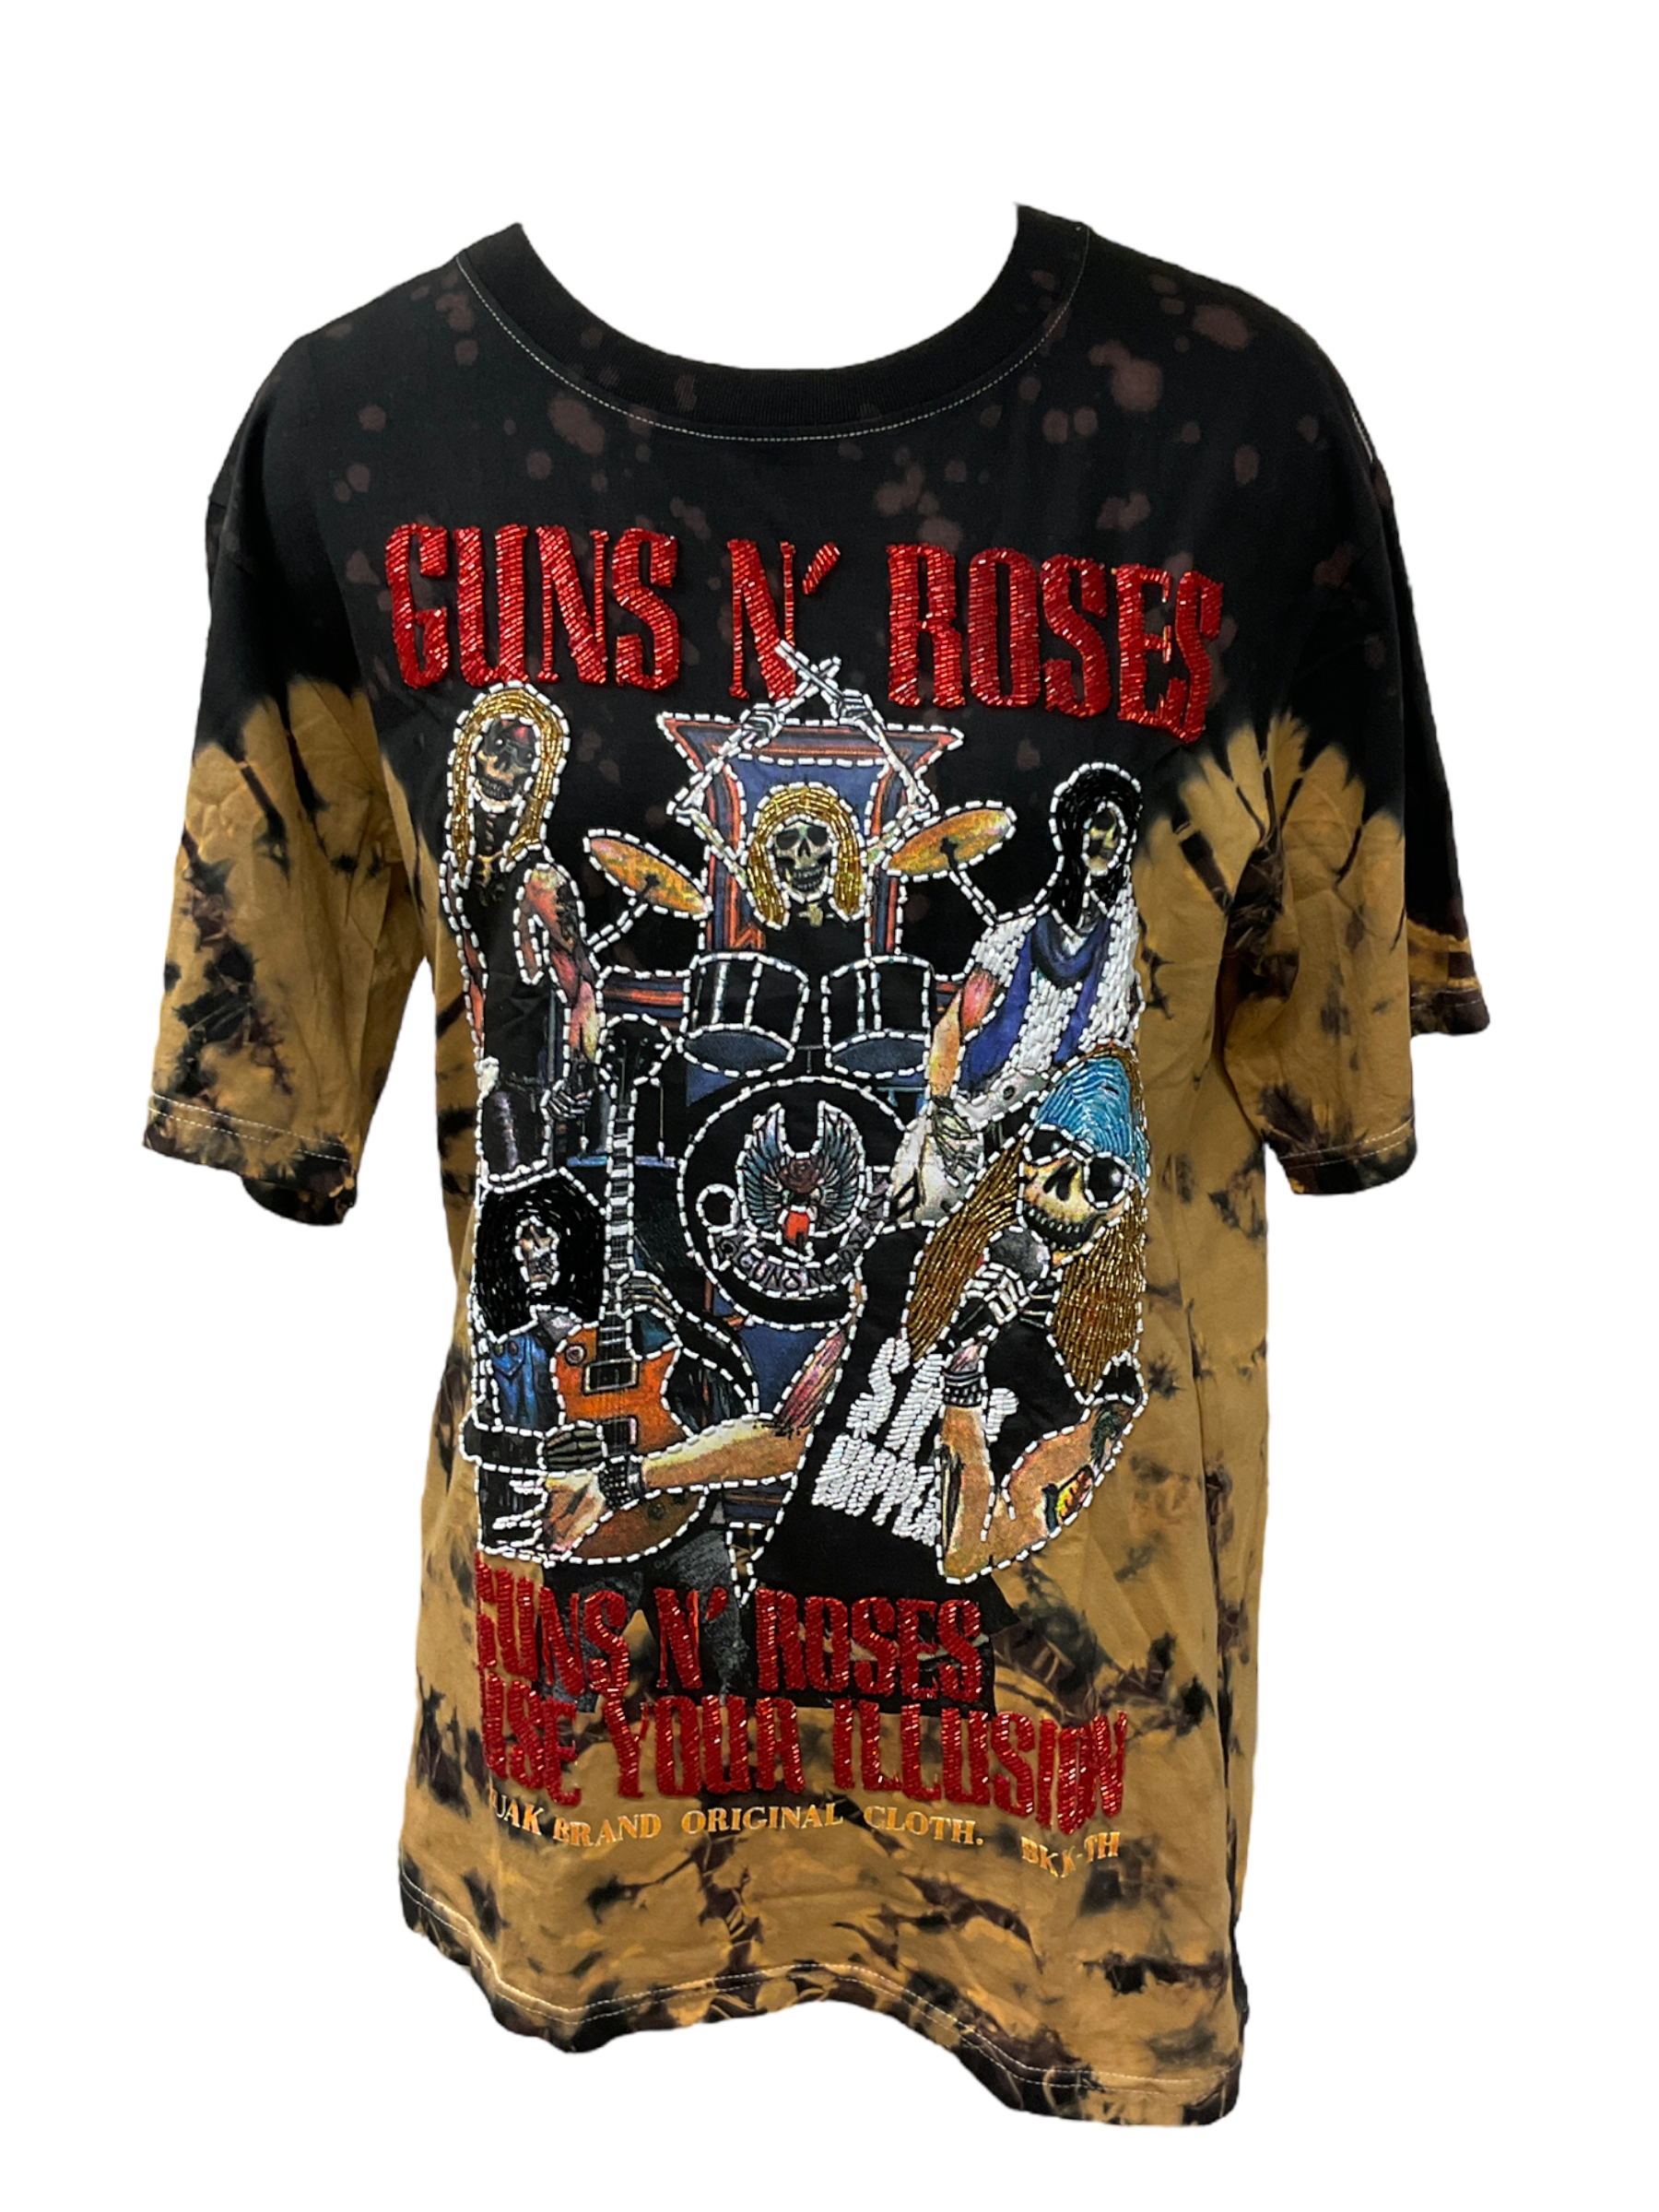 Guns N Roses Vuntaken